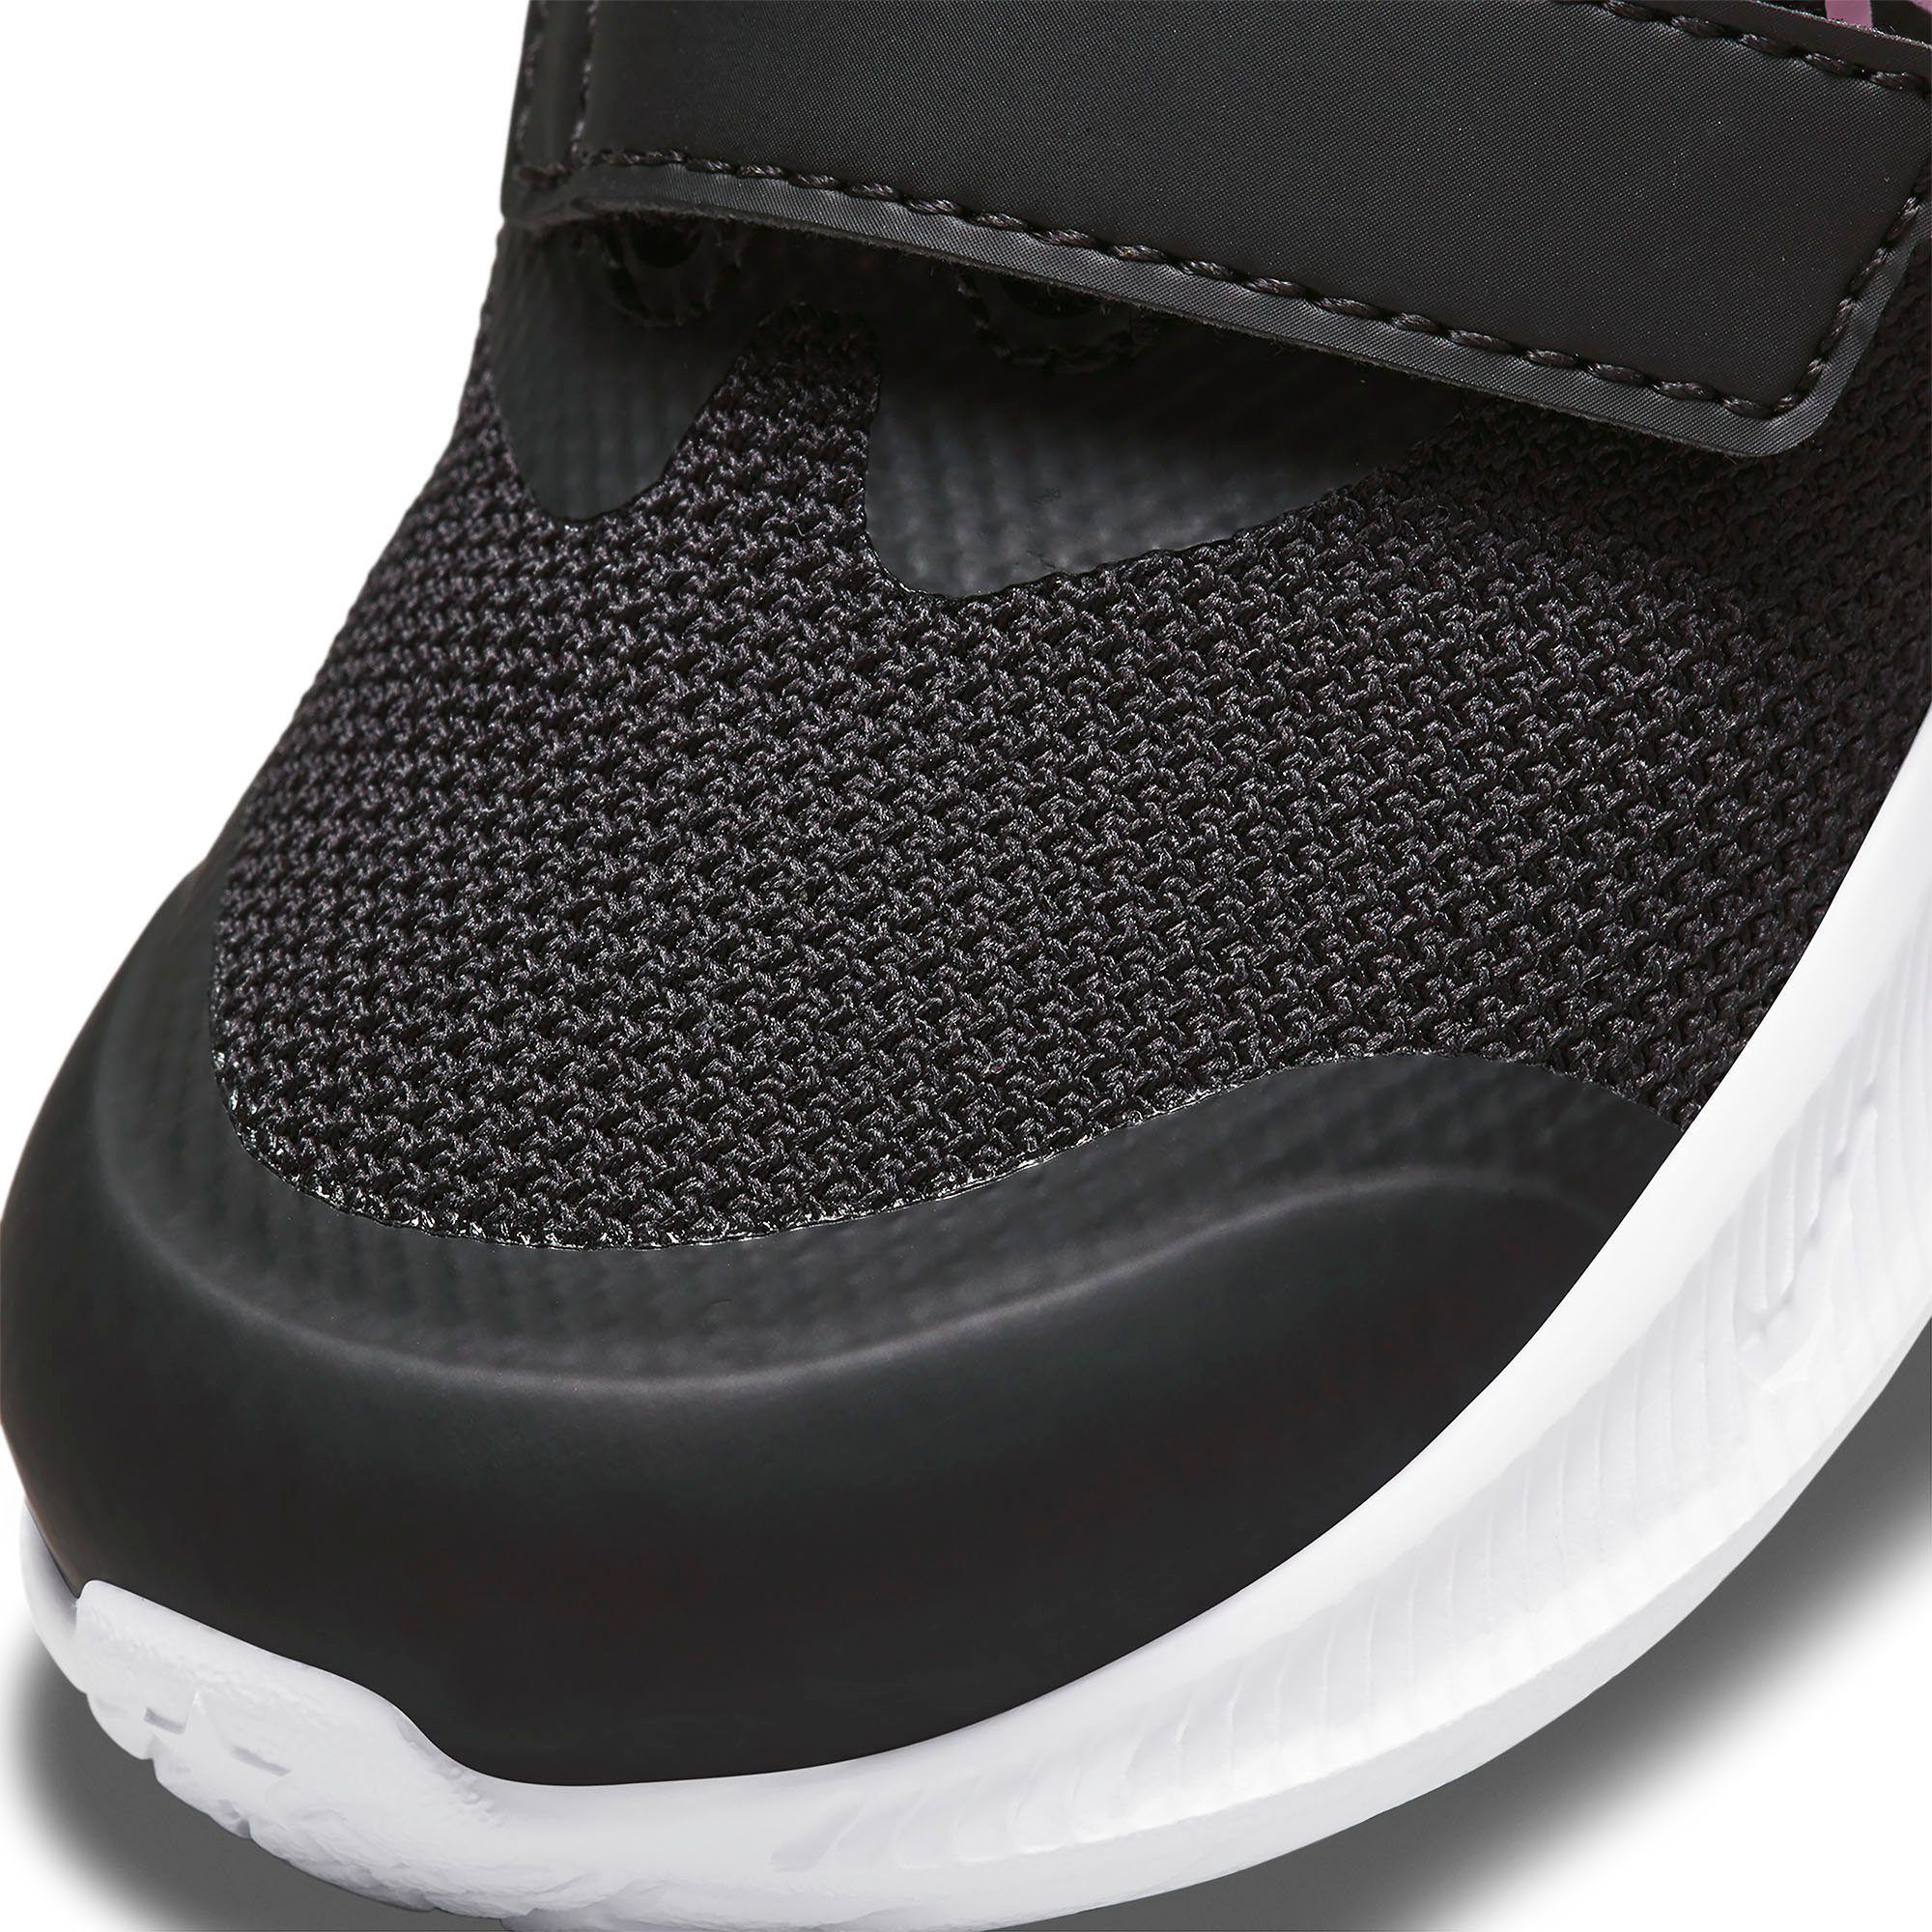 Laufschuh mit 3 Klettverschluss Nike STAR (TD) RUNNER schwarz-rosa